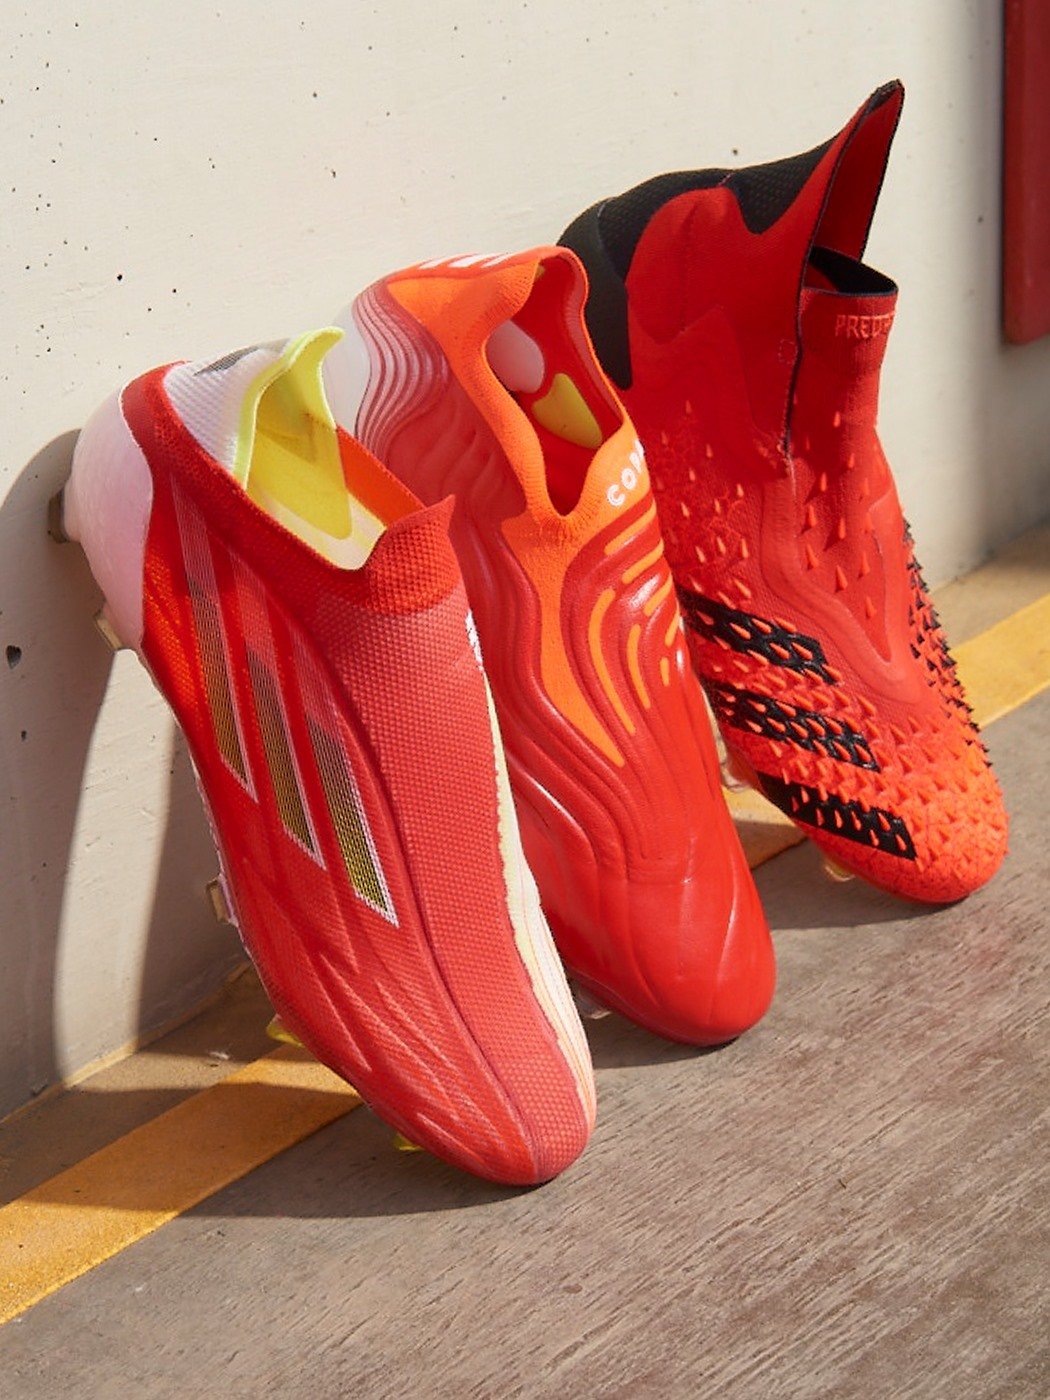 Đội hình 3 dòng giày đá bóng nổi bật của adidas